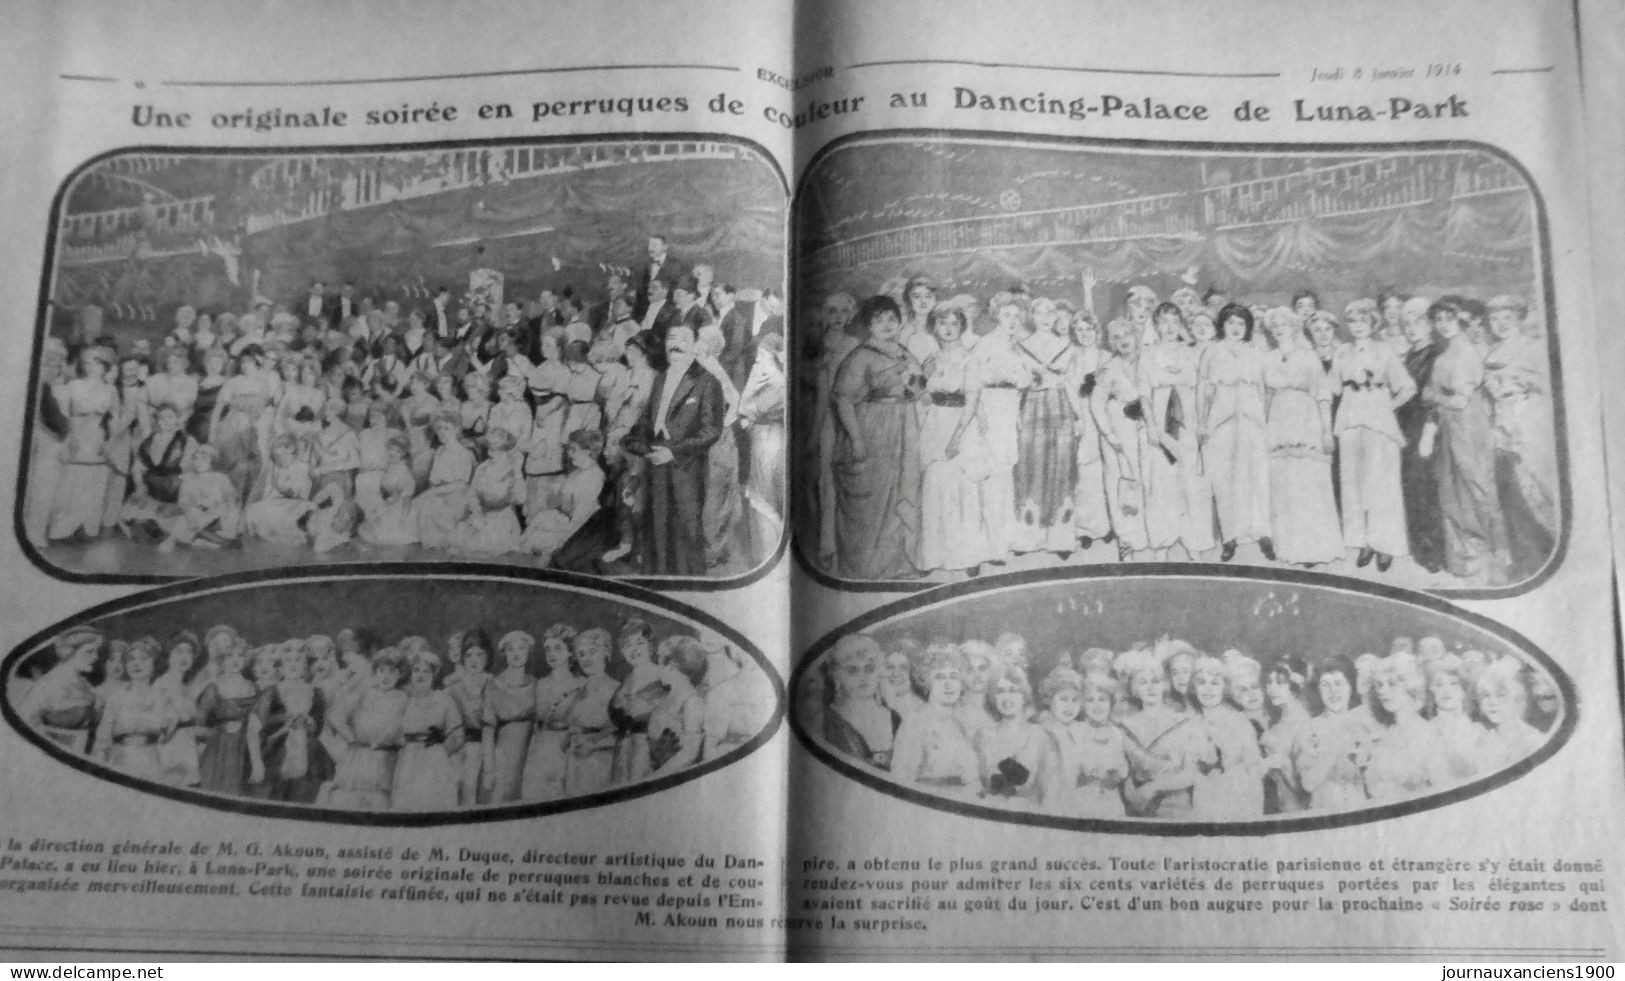 1914 EXCELSIOR ARTICLE DE PRESSE DANCING PALACE AKOUN DUQUE PERRUQUE 1 JOURNAL - Glasplaten